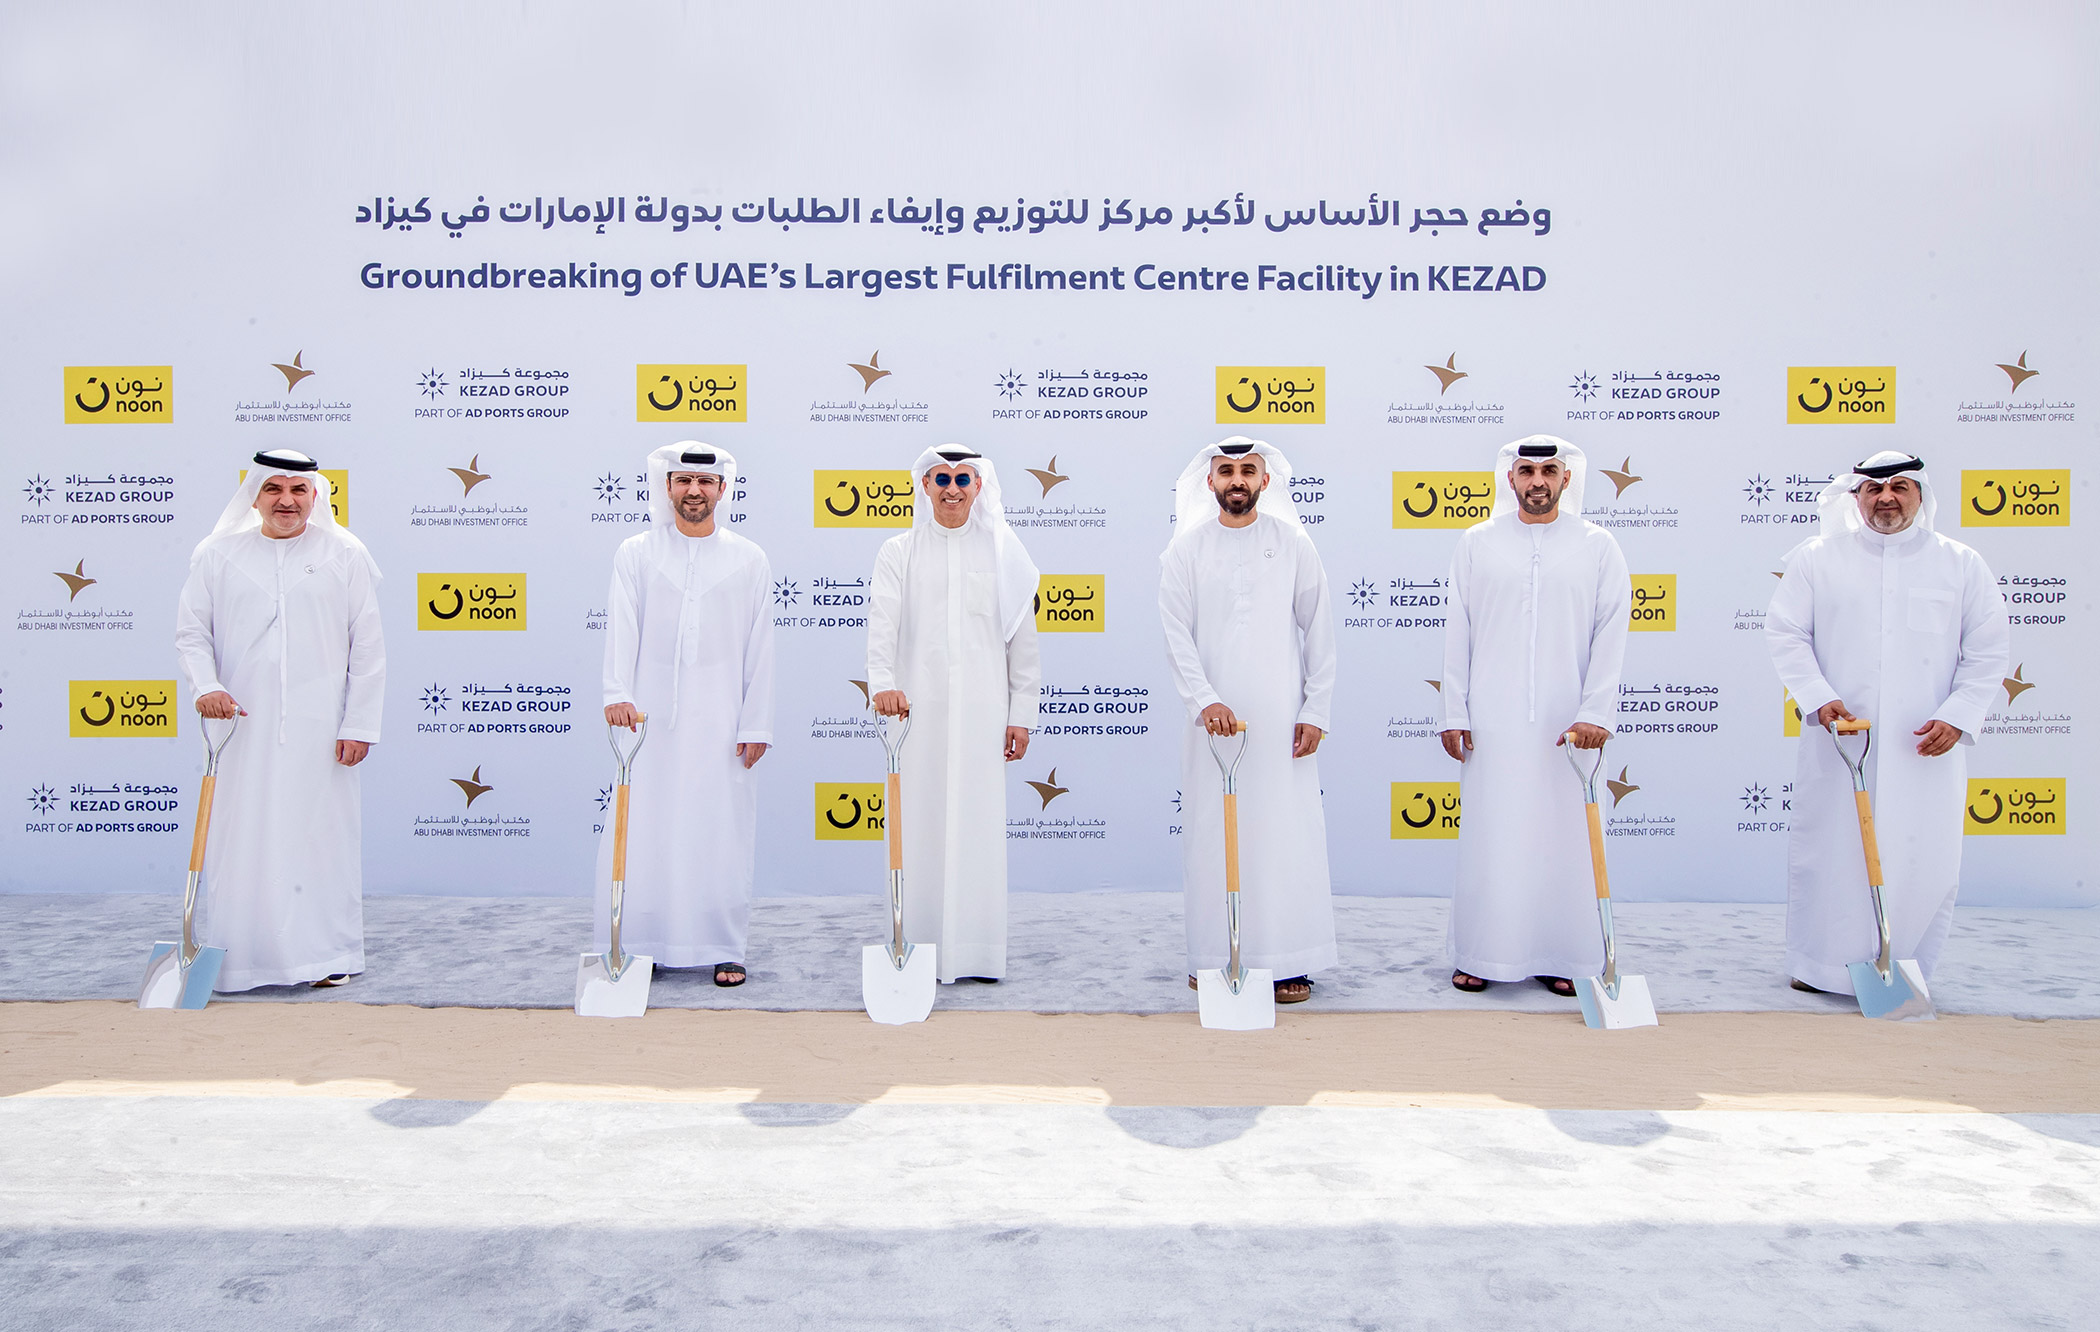 مجموعة كيزاد تطلق أعمال إنشاء أكبر مركز للتوزيع وإيفاء الطلبات لقطاع التجارة الإلكترونية في دولة الإمارات العربية المتحدة 